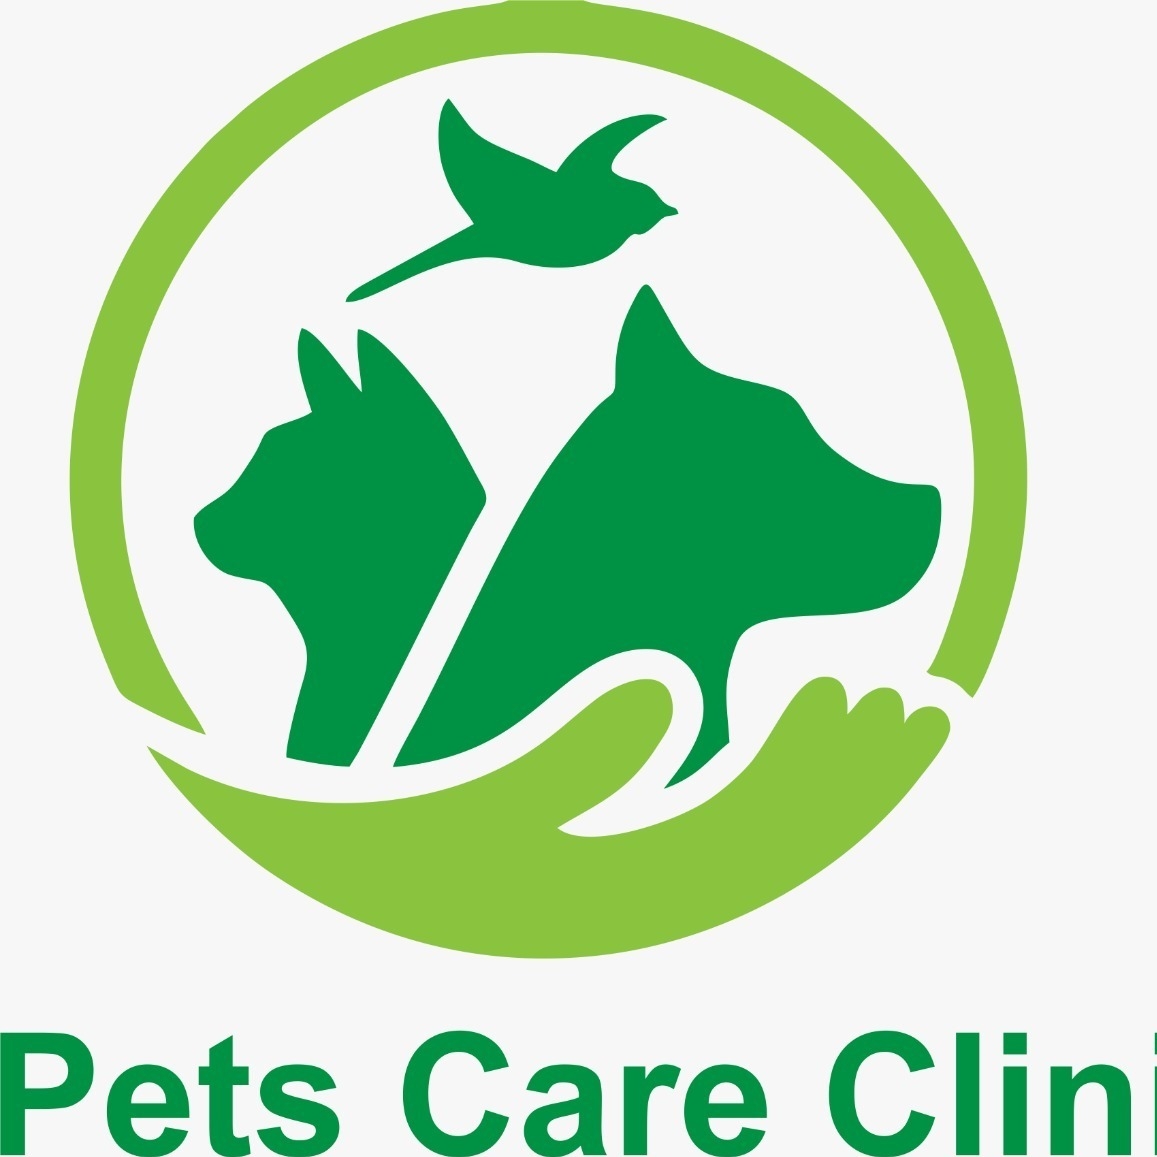 Pets Care Clinic|Diagnostic centre|Medical Services